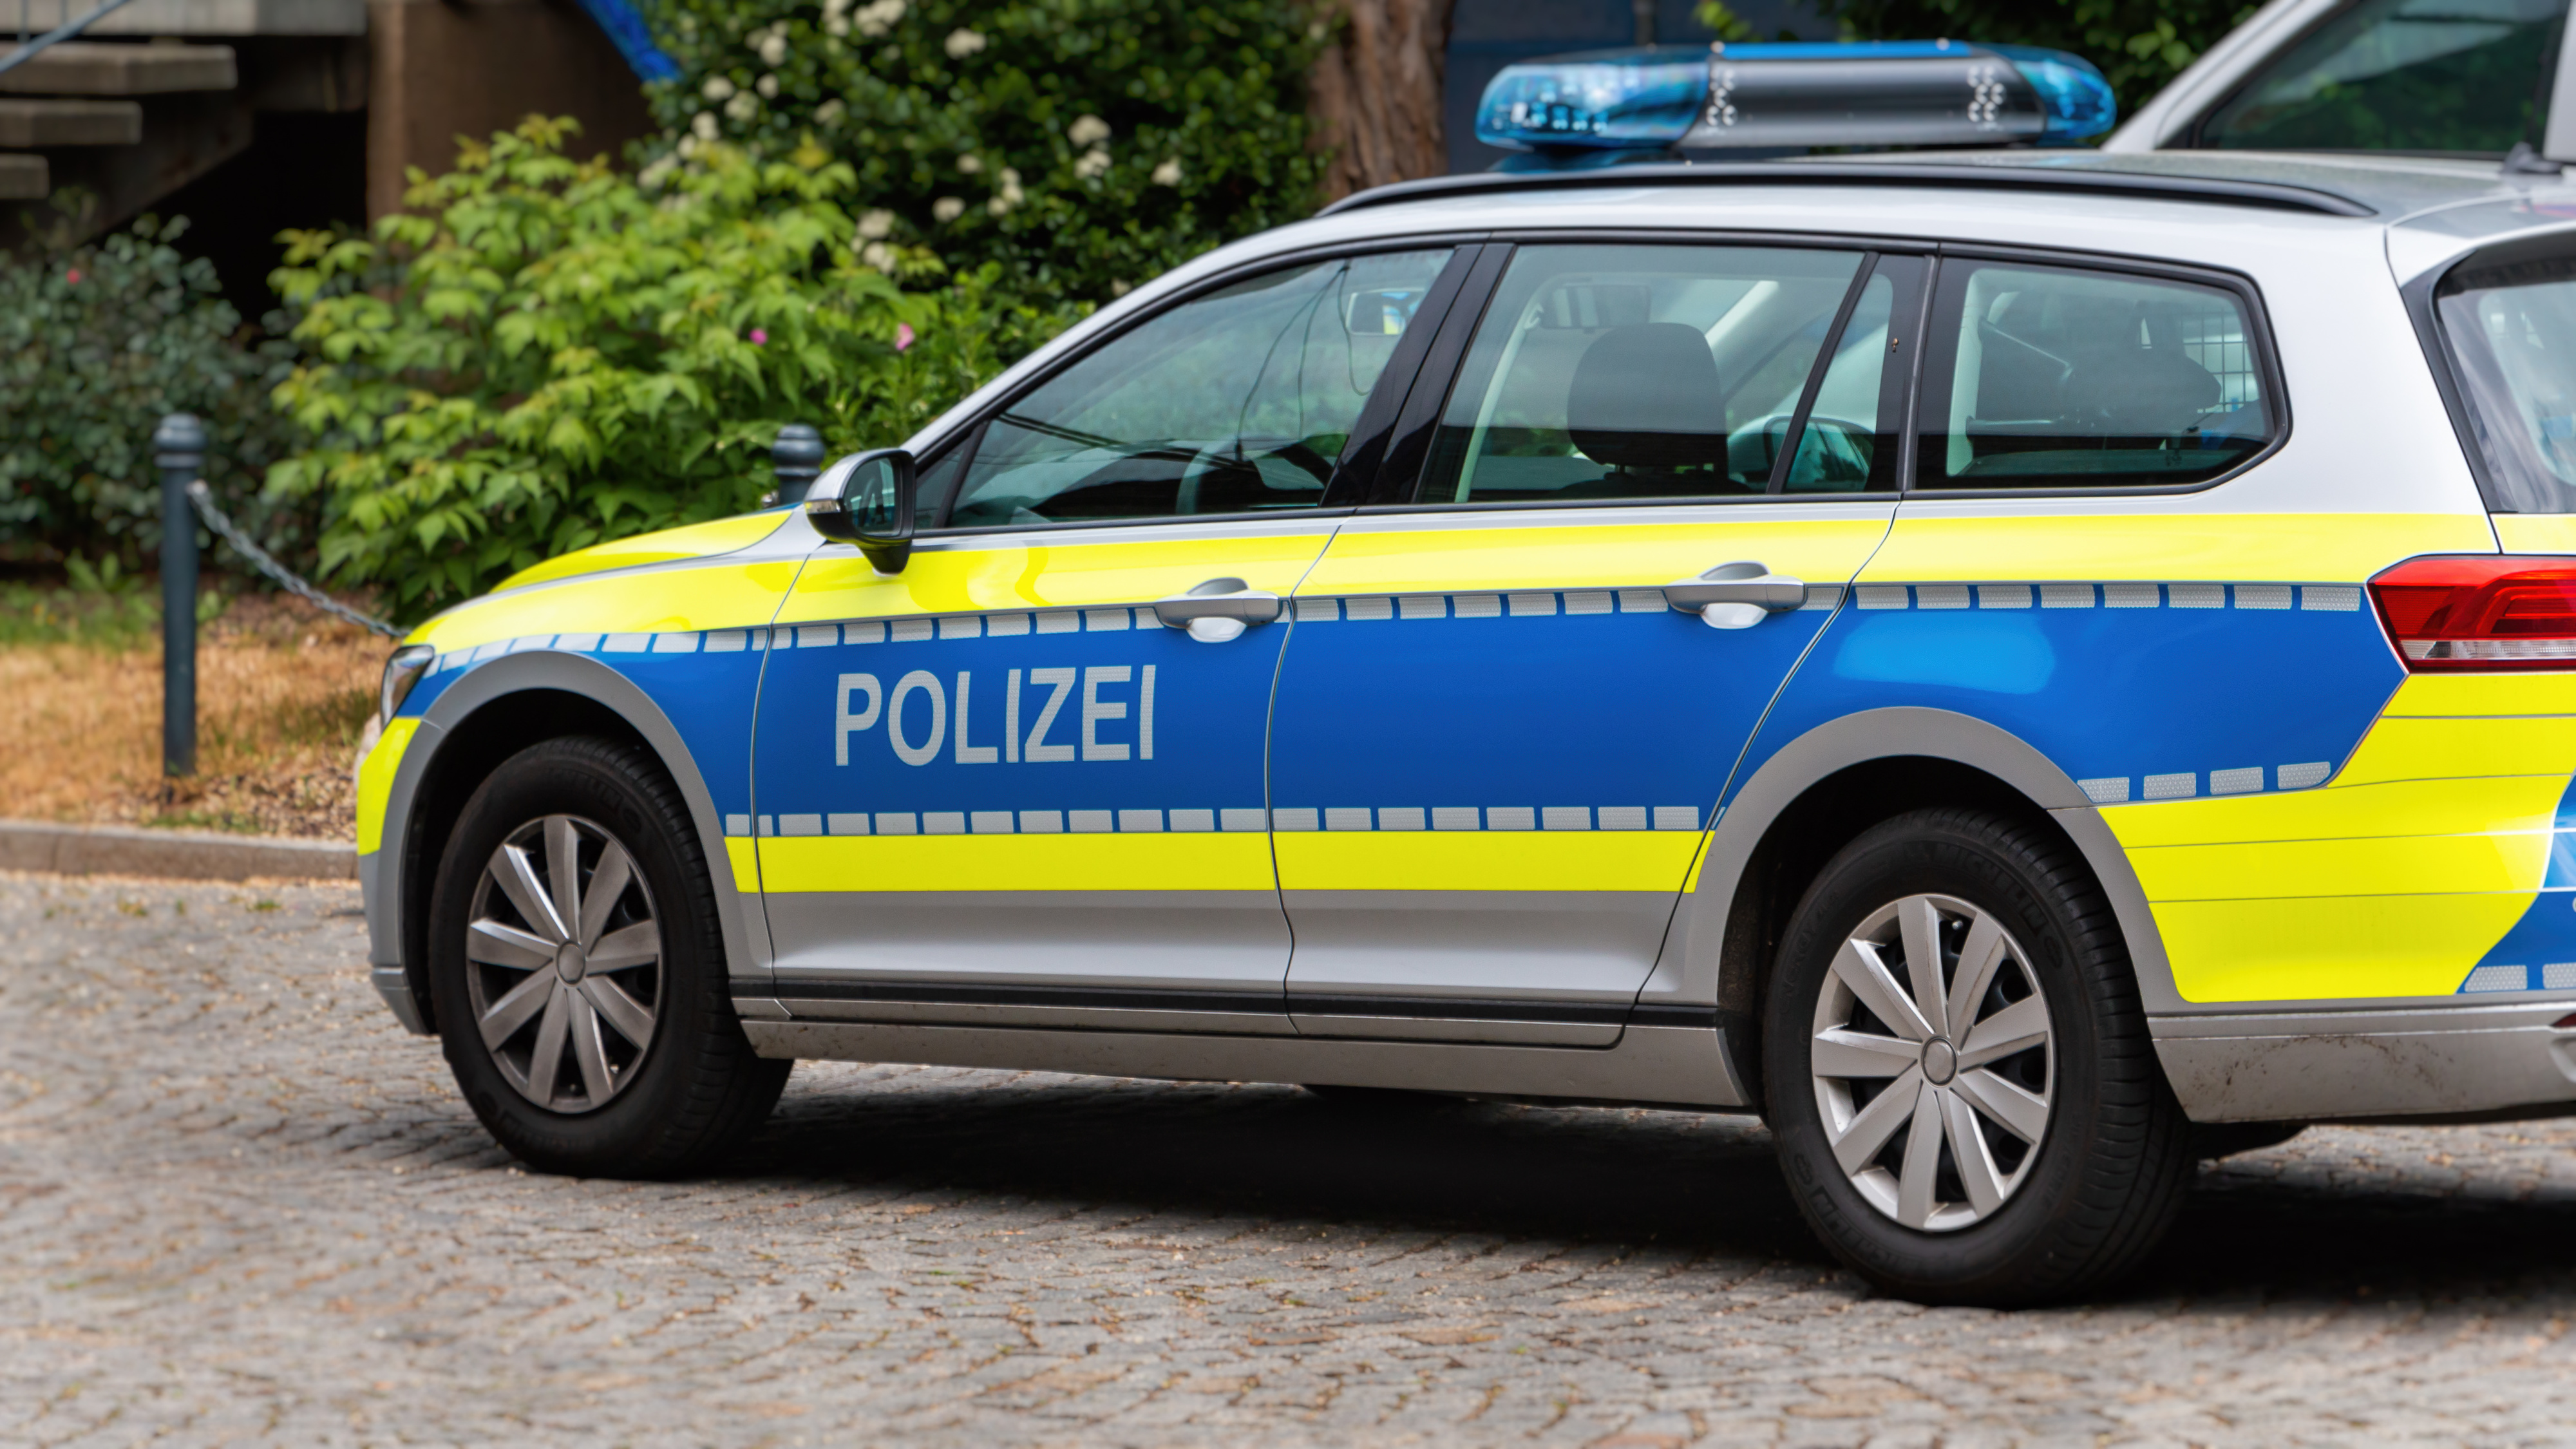 Polizei Baden-Baden